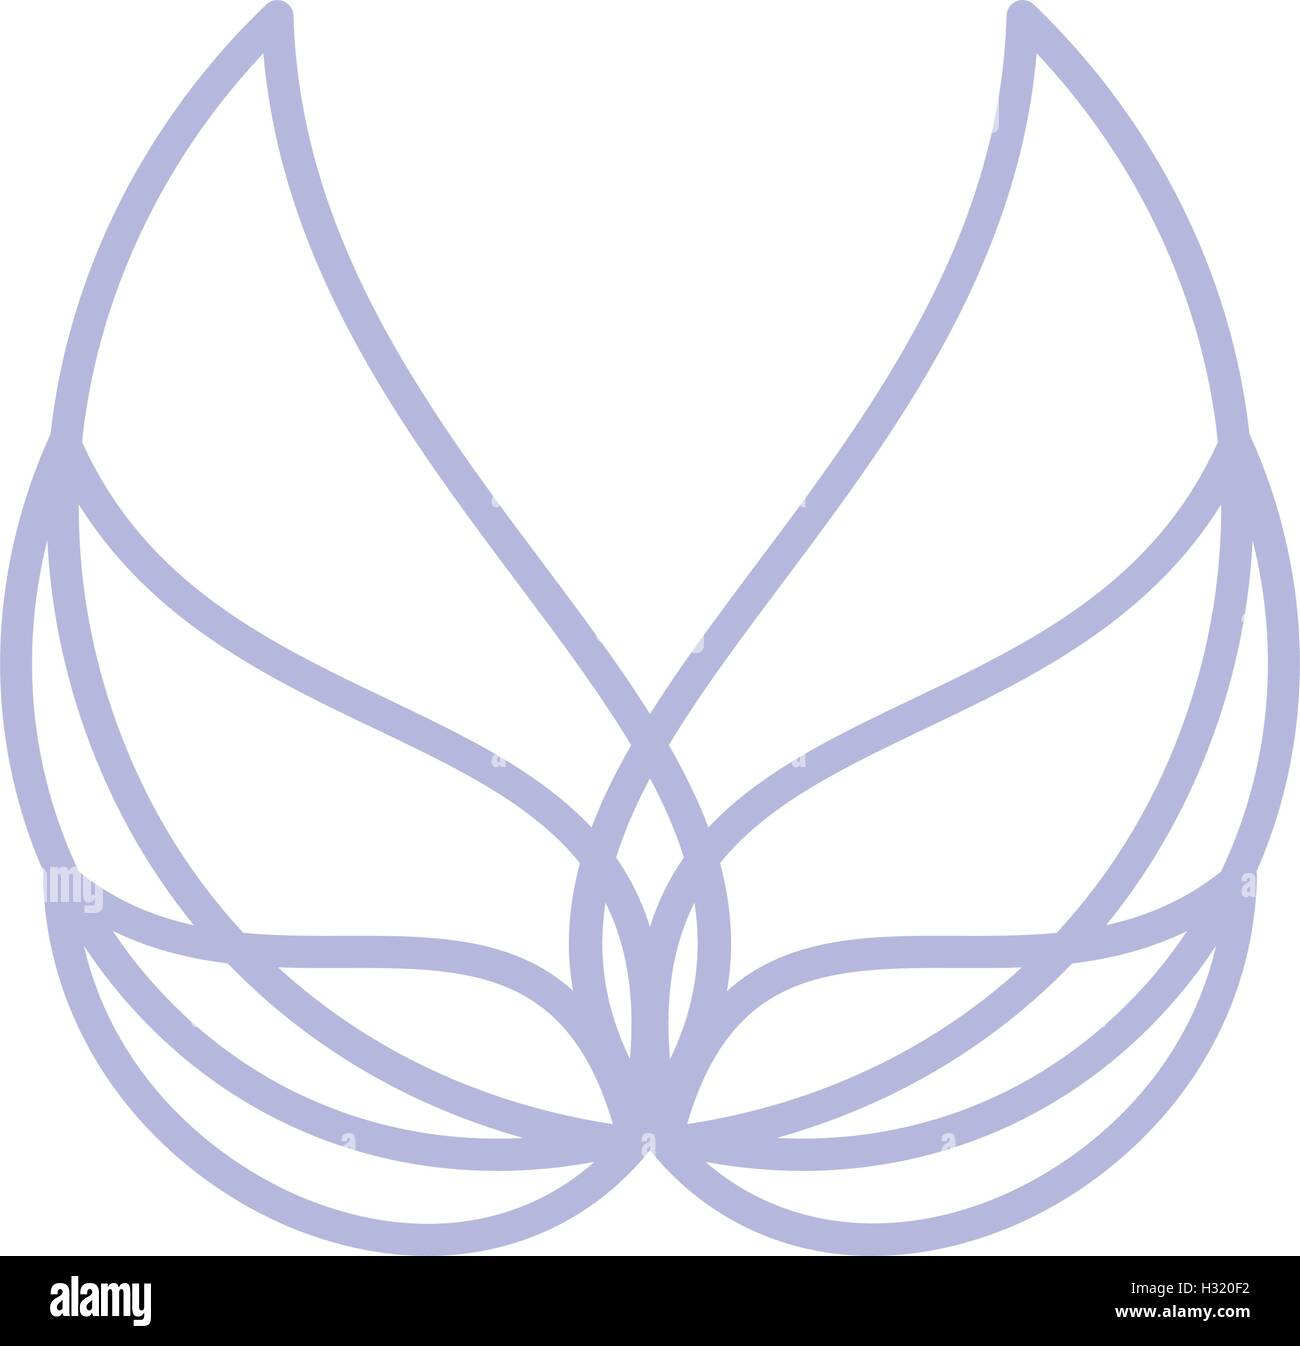 Isolierte abstrakt blau Vogel-Element-Logo. Flügel mit Federn Schriftzug ausbreitet. Flug-Symbol. Luftzeichen. Vektor-Illustration. Engel-Symbol. Stock Vektor